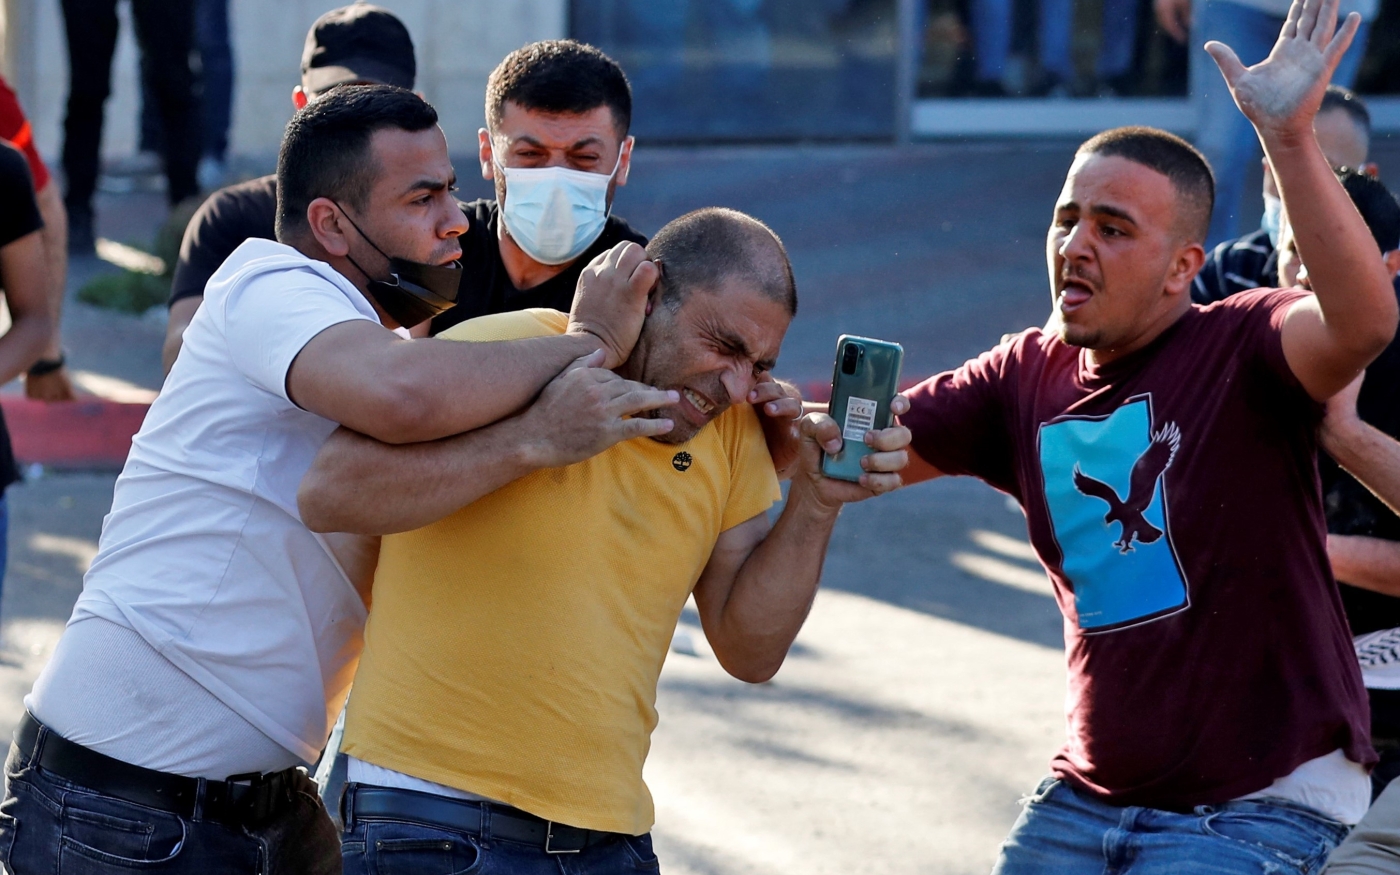 Des membres des forces de sécurité palestiniennes en civil arrêtent un homme au cours d’une manifestation à Ramallah, en Cisjordanie occupée, le 26 juin 2021 (AFP/Ahmad Gharabli)